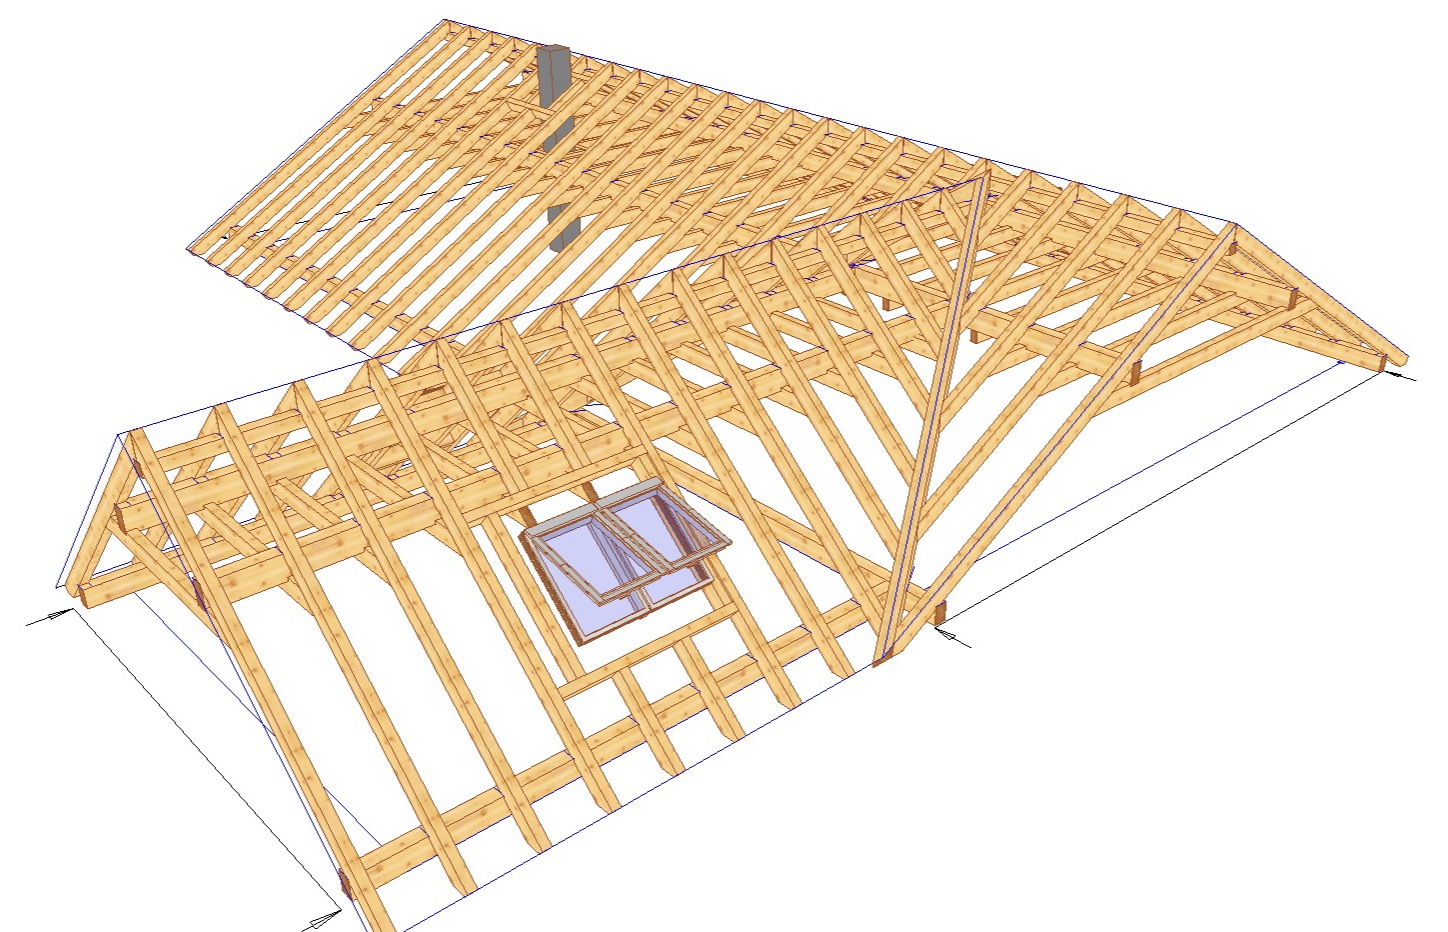 LIGNIKON Small V16 | 3D-CAD Software für Holzbau & Abbund | Zum Kauf